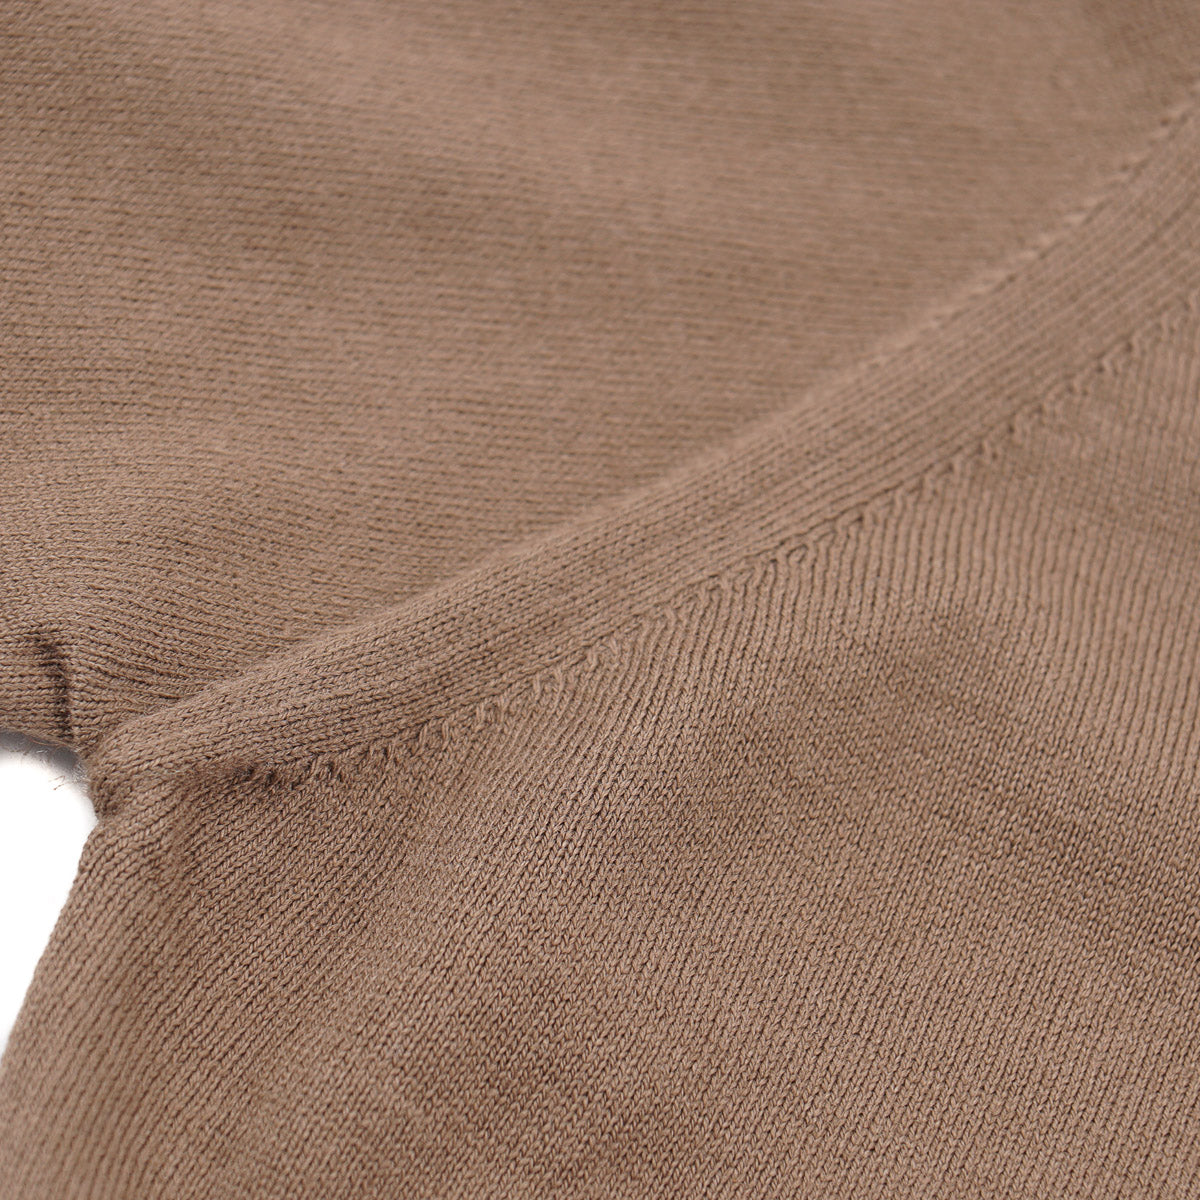 Cruciani Extrafine Cotton Cardigan Sweater - Top Shelf Apparel